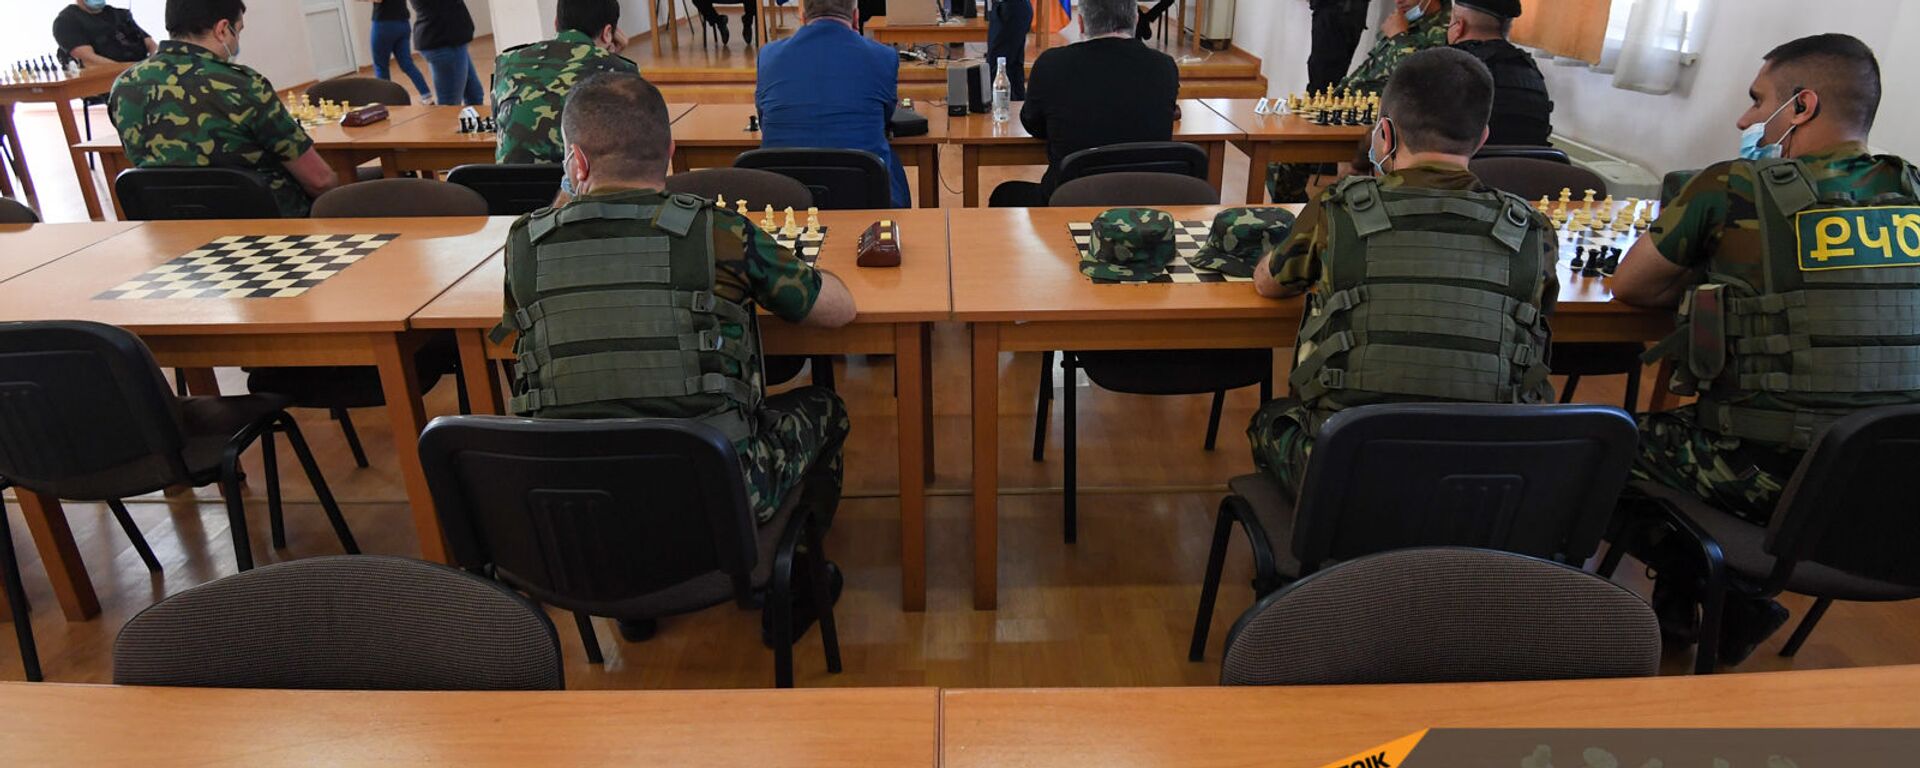 Сотрудники УИС наблюдают за международным шахматным онлайн-турниром для заключенных - Sputnik Армения, 1920, 11.05.2021